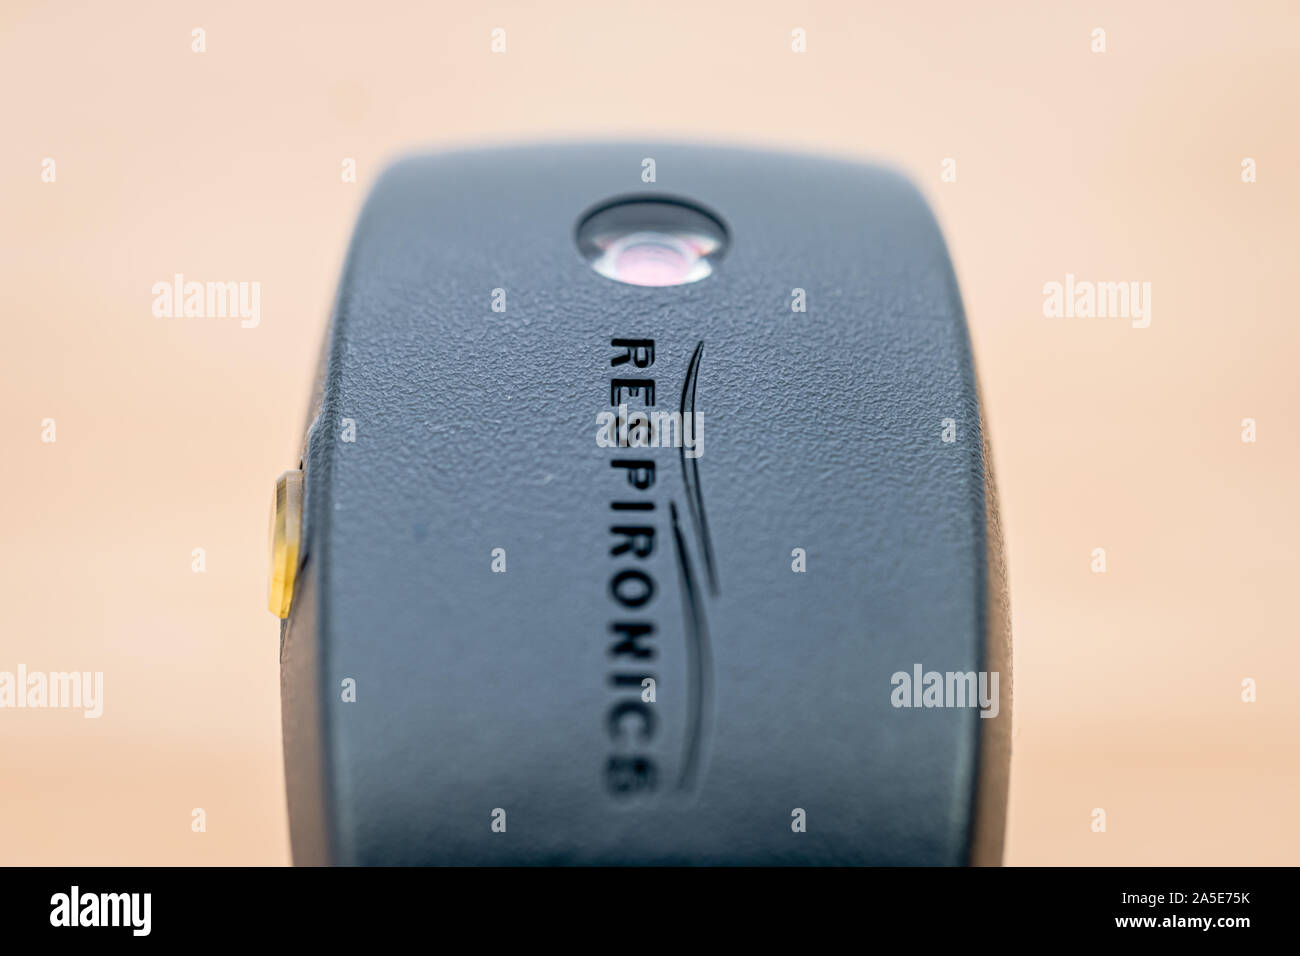 Die Front eines Philips Respironics Actiwatch, eine klinische Forschung - Grade tracker Watch für Schlaflosigkeit, schlaf Studien und Überwachung der Aktivität Stockfoto